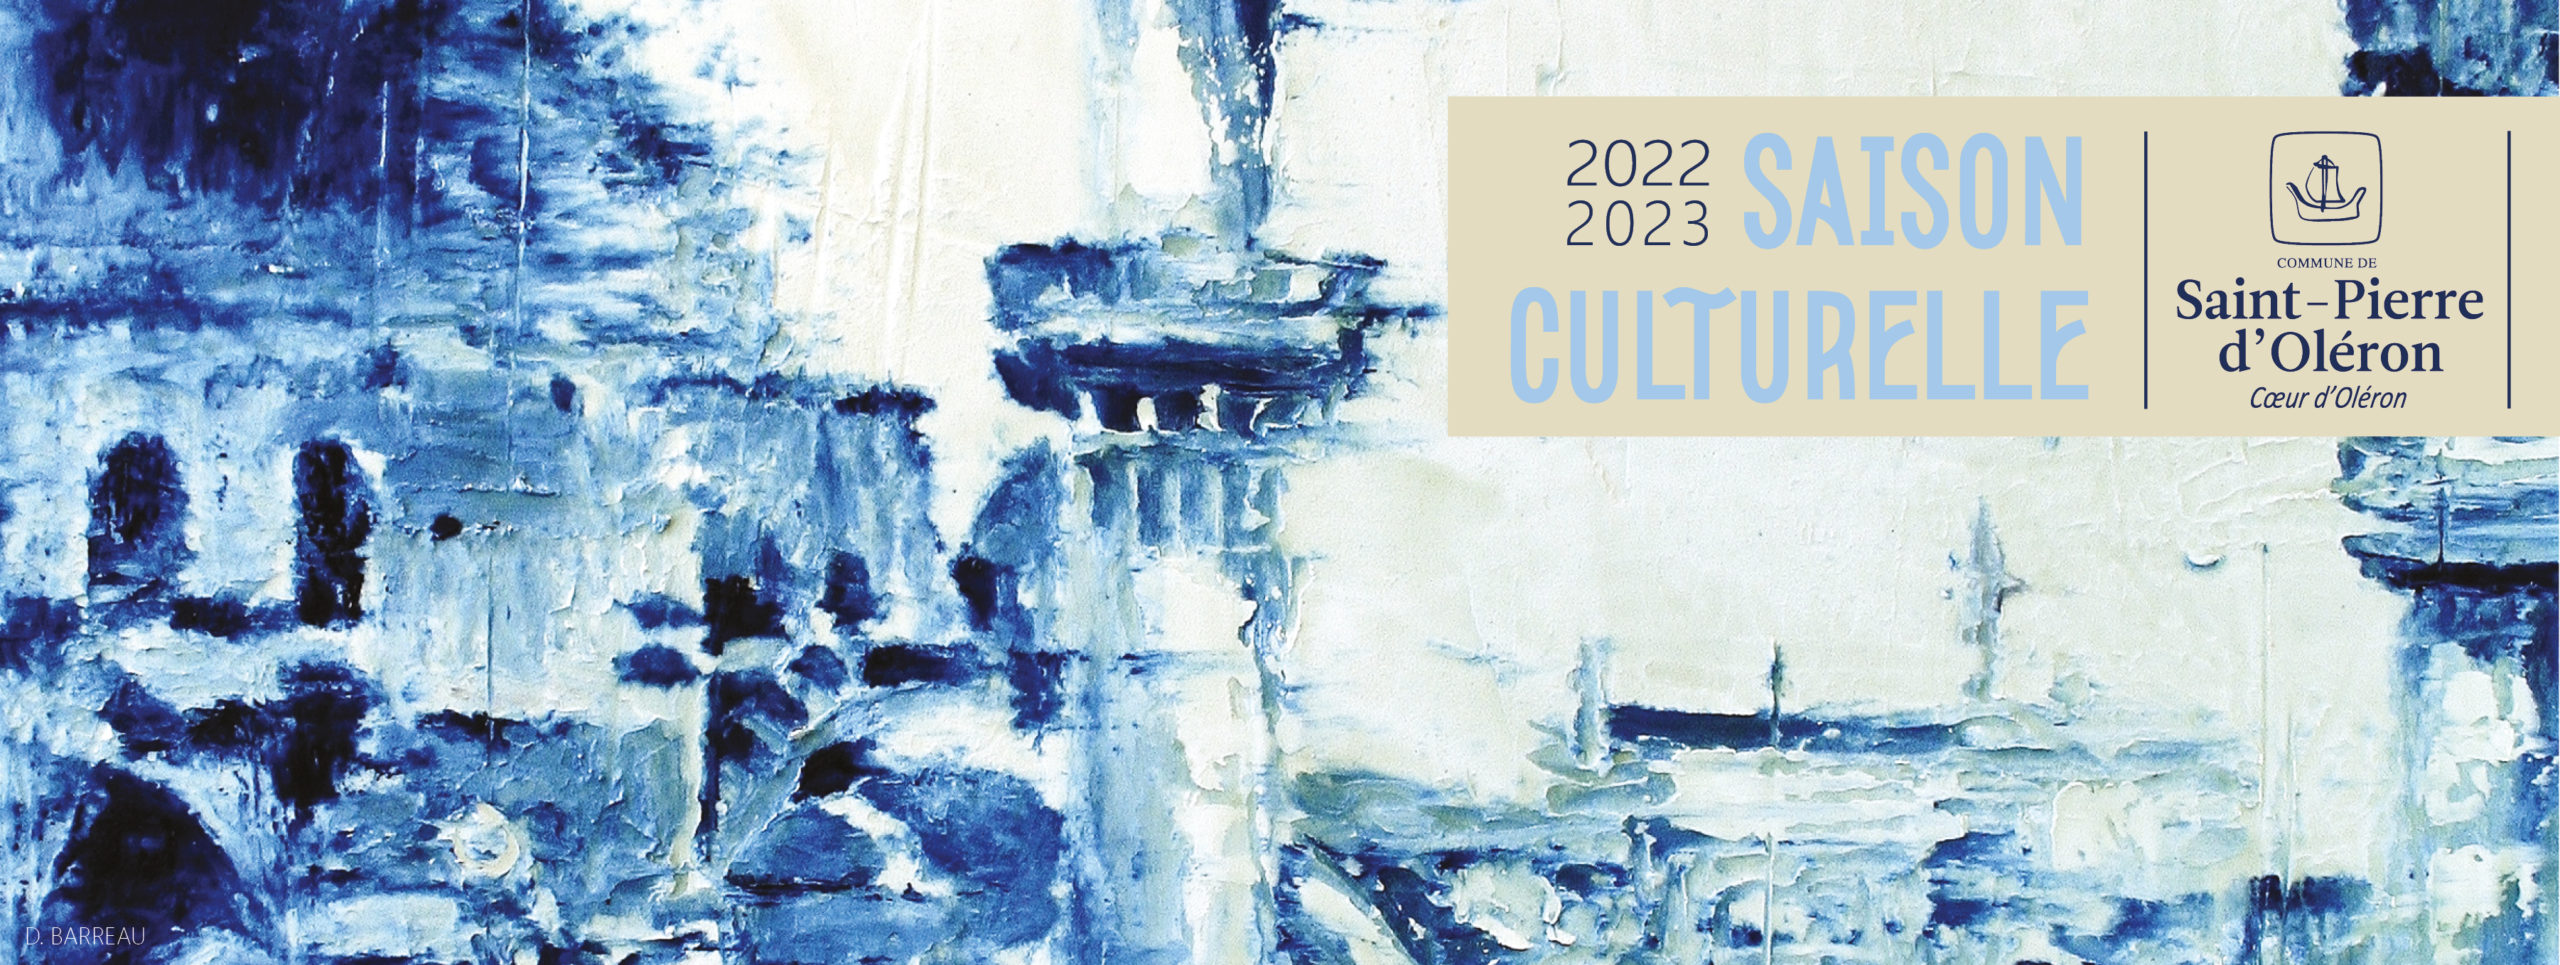 Bandeau saison culturelle 2022-2023